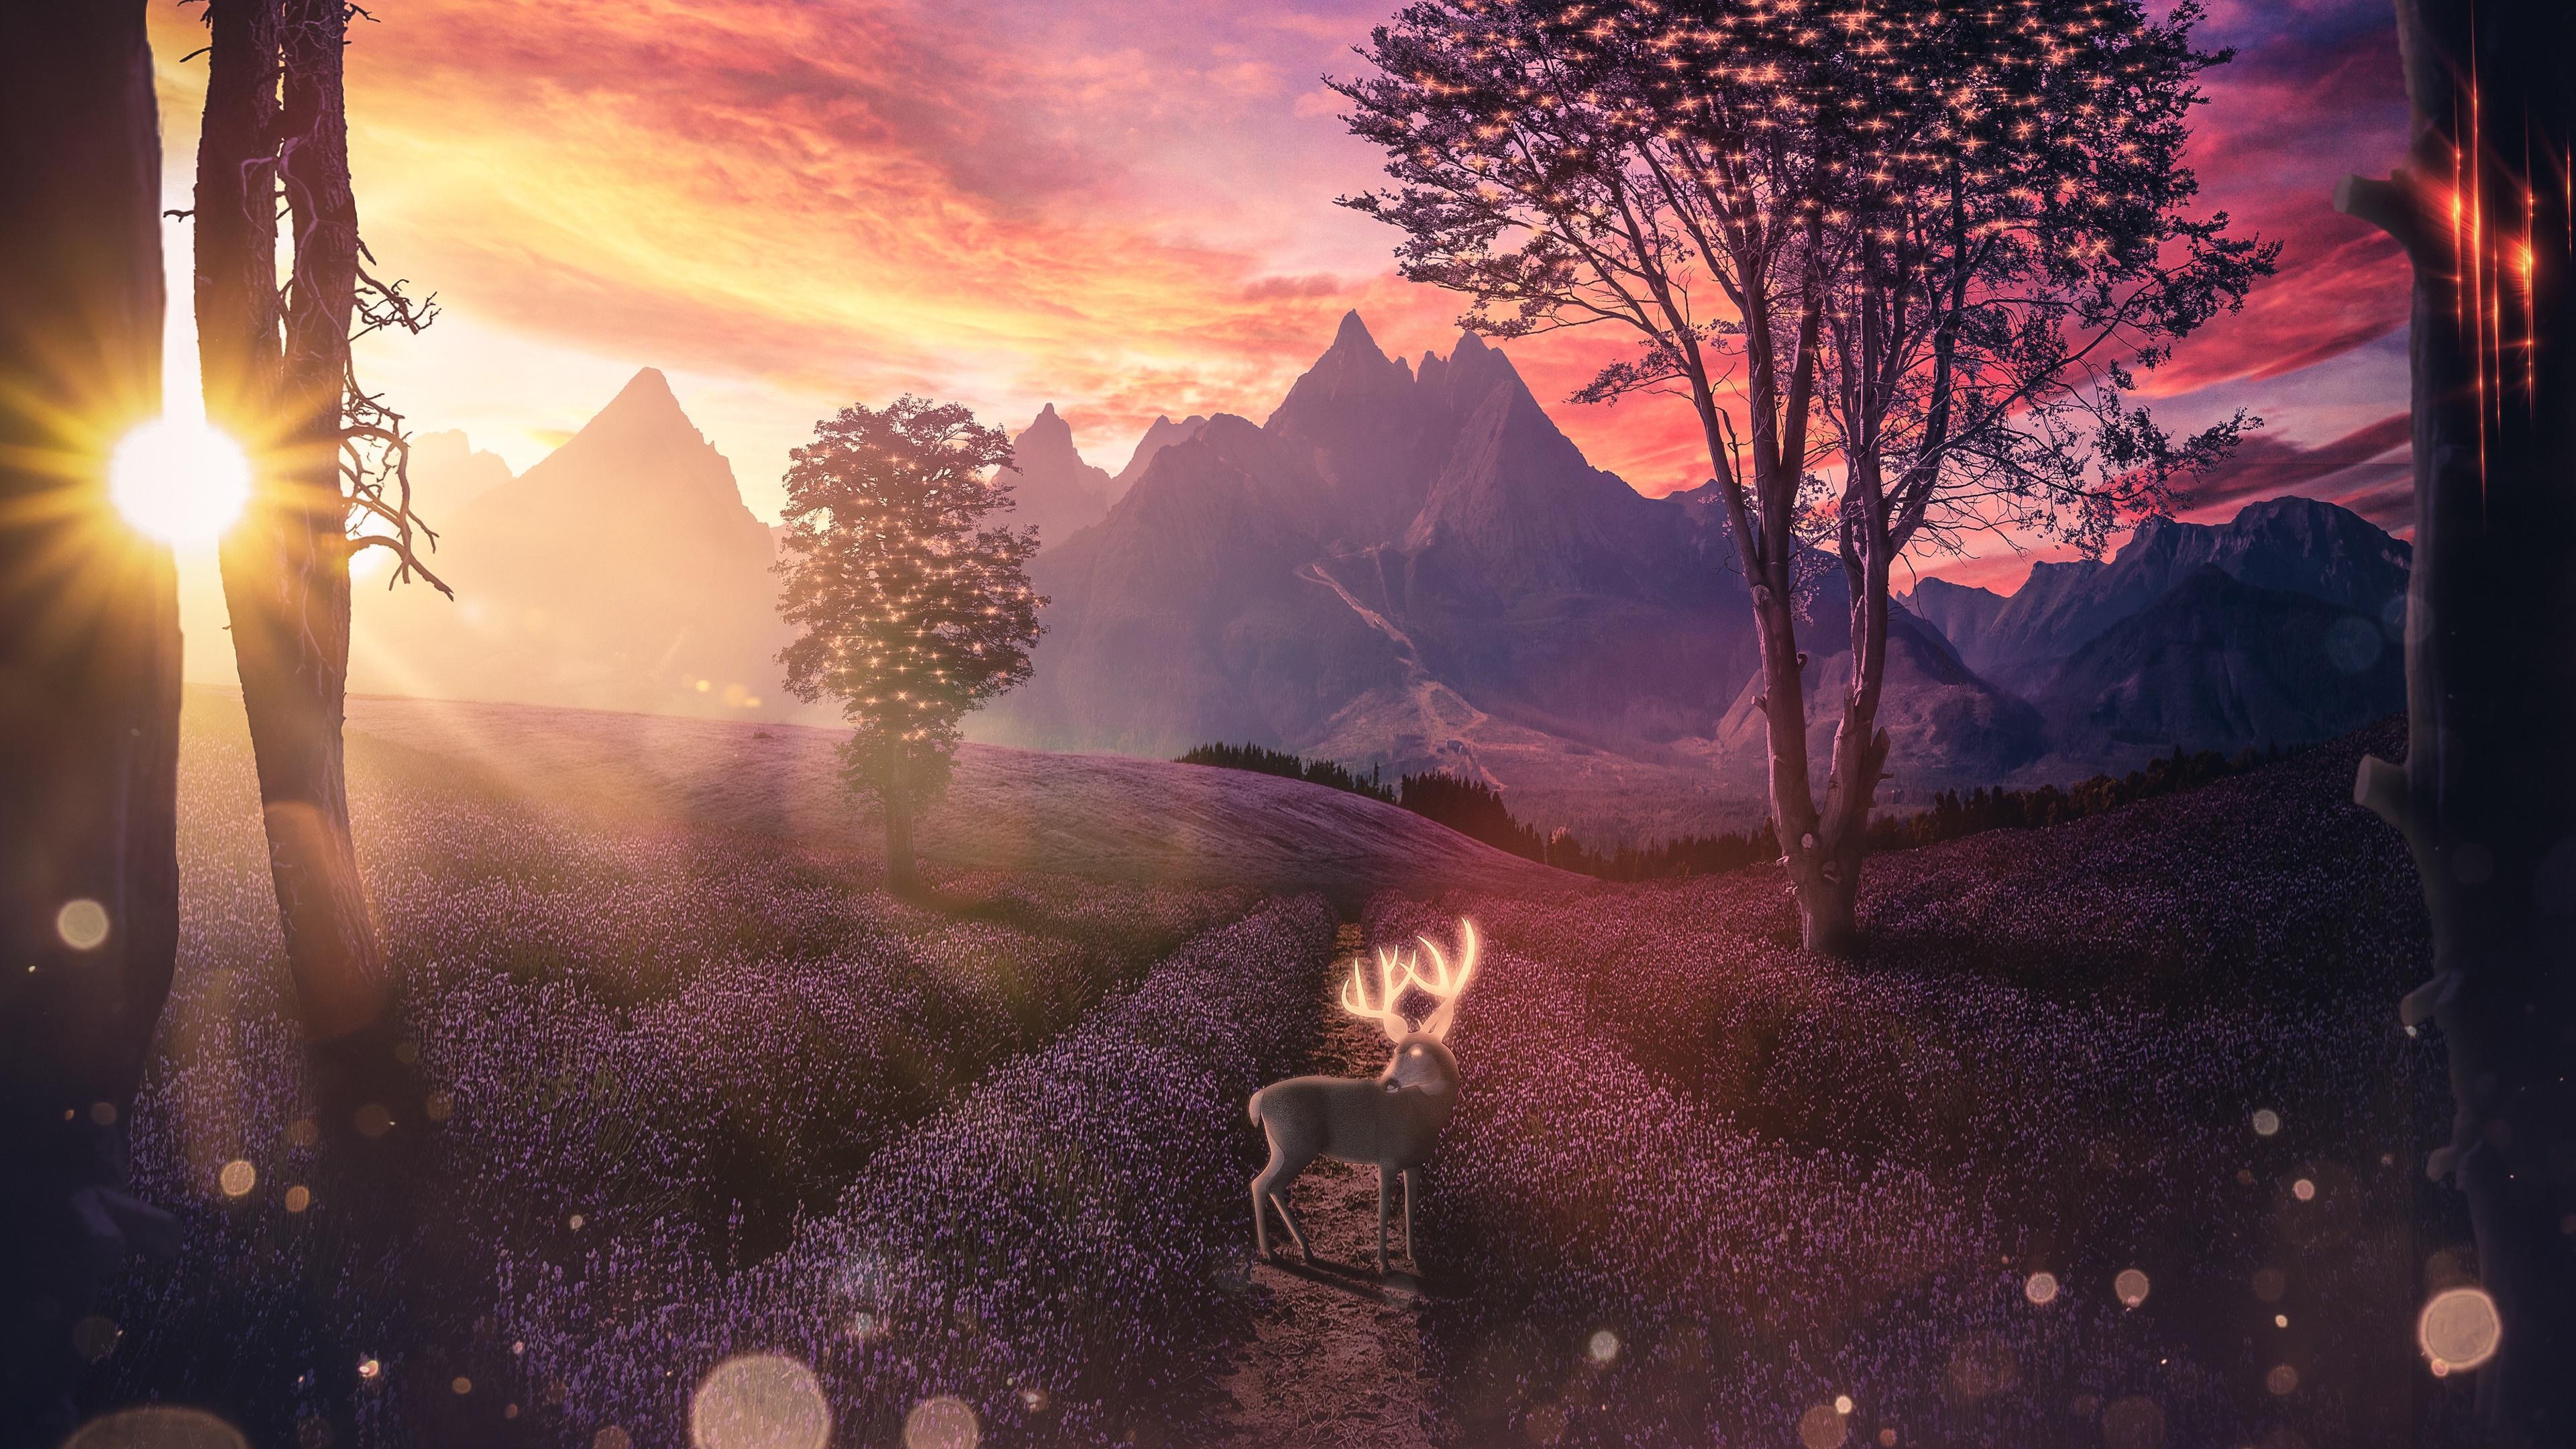 HD wallpaper, Lavender, Digital Art, 4K, Field, Flower, Scenery, Deer, Landscape, Sunset